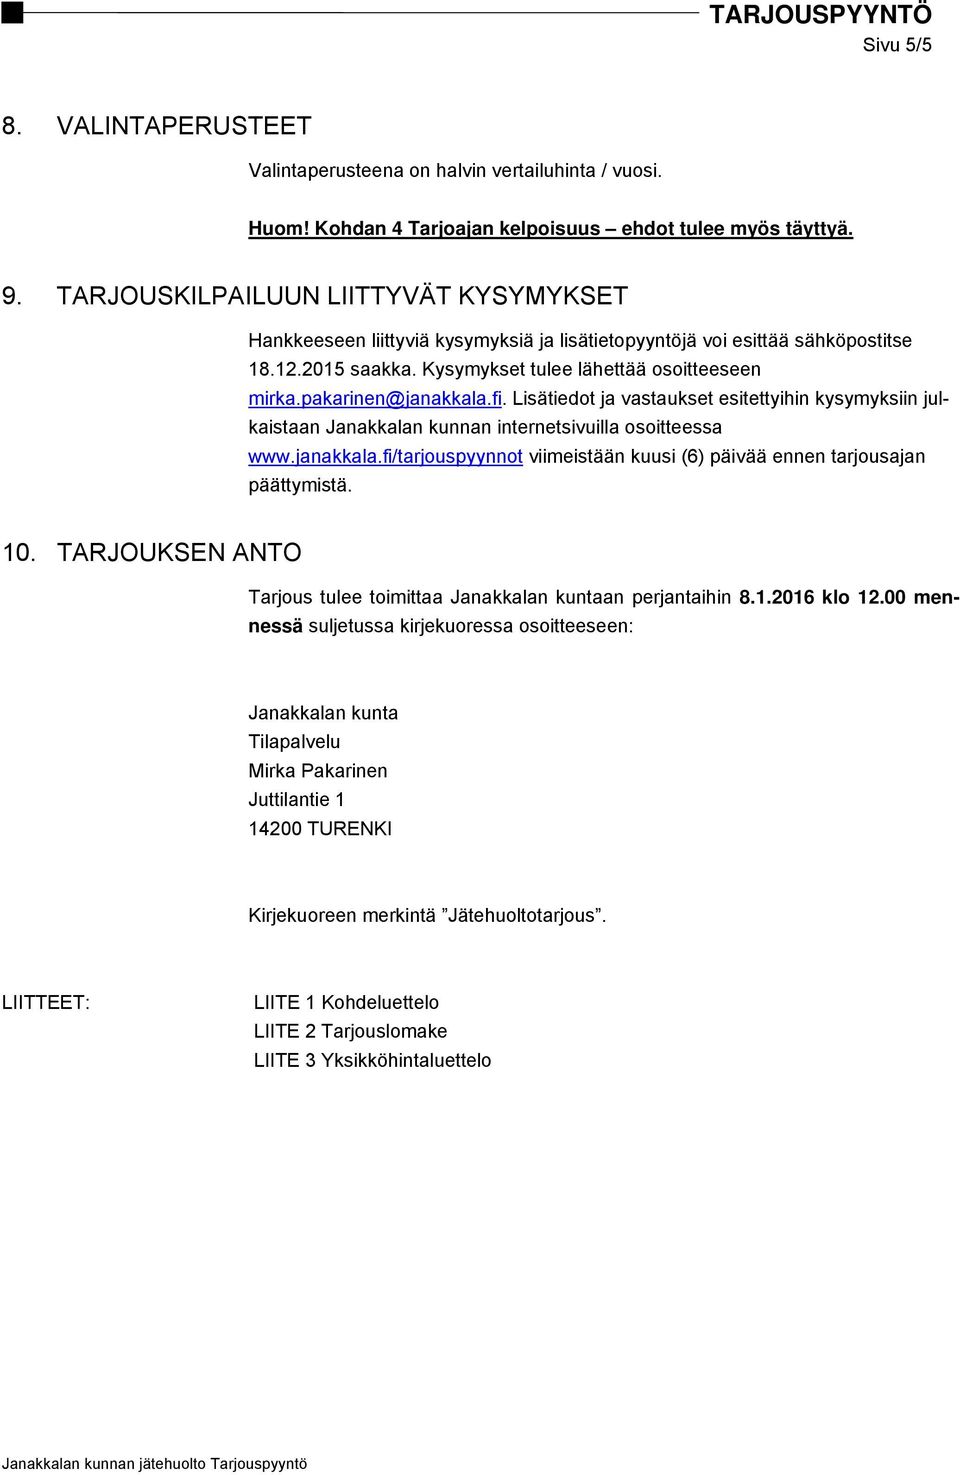 pakarinen@janakkala.fi. Lisätiedot ja vastaukset esitettyihin kysymyksiin julkaistaan Janakkalan kunnan internetsivuilla osoitteessa www.janakkala.fi/tarjouspyynnot viimeistään kuusi (6) päivää ennen tarjousajan päättymistä.